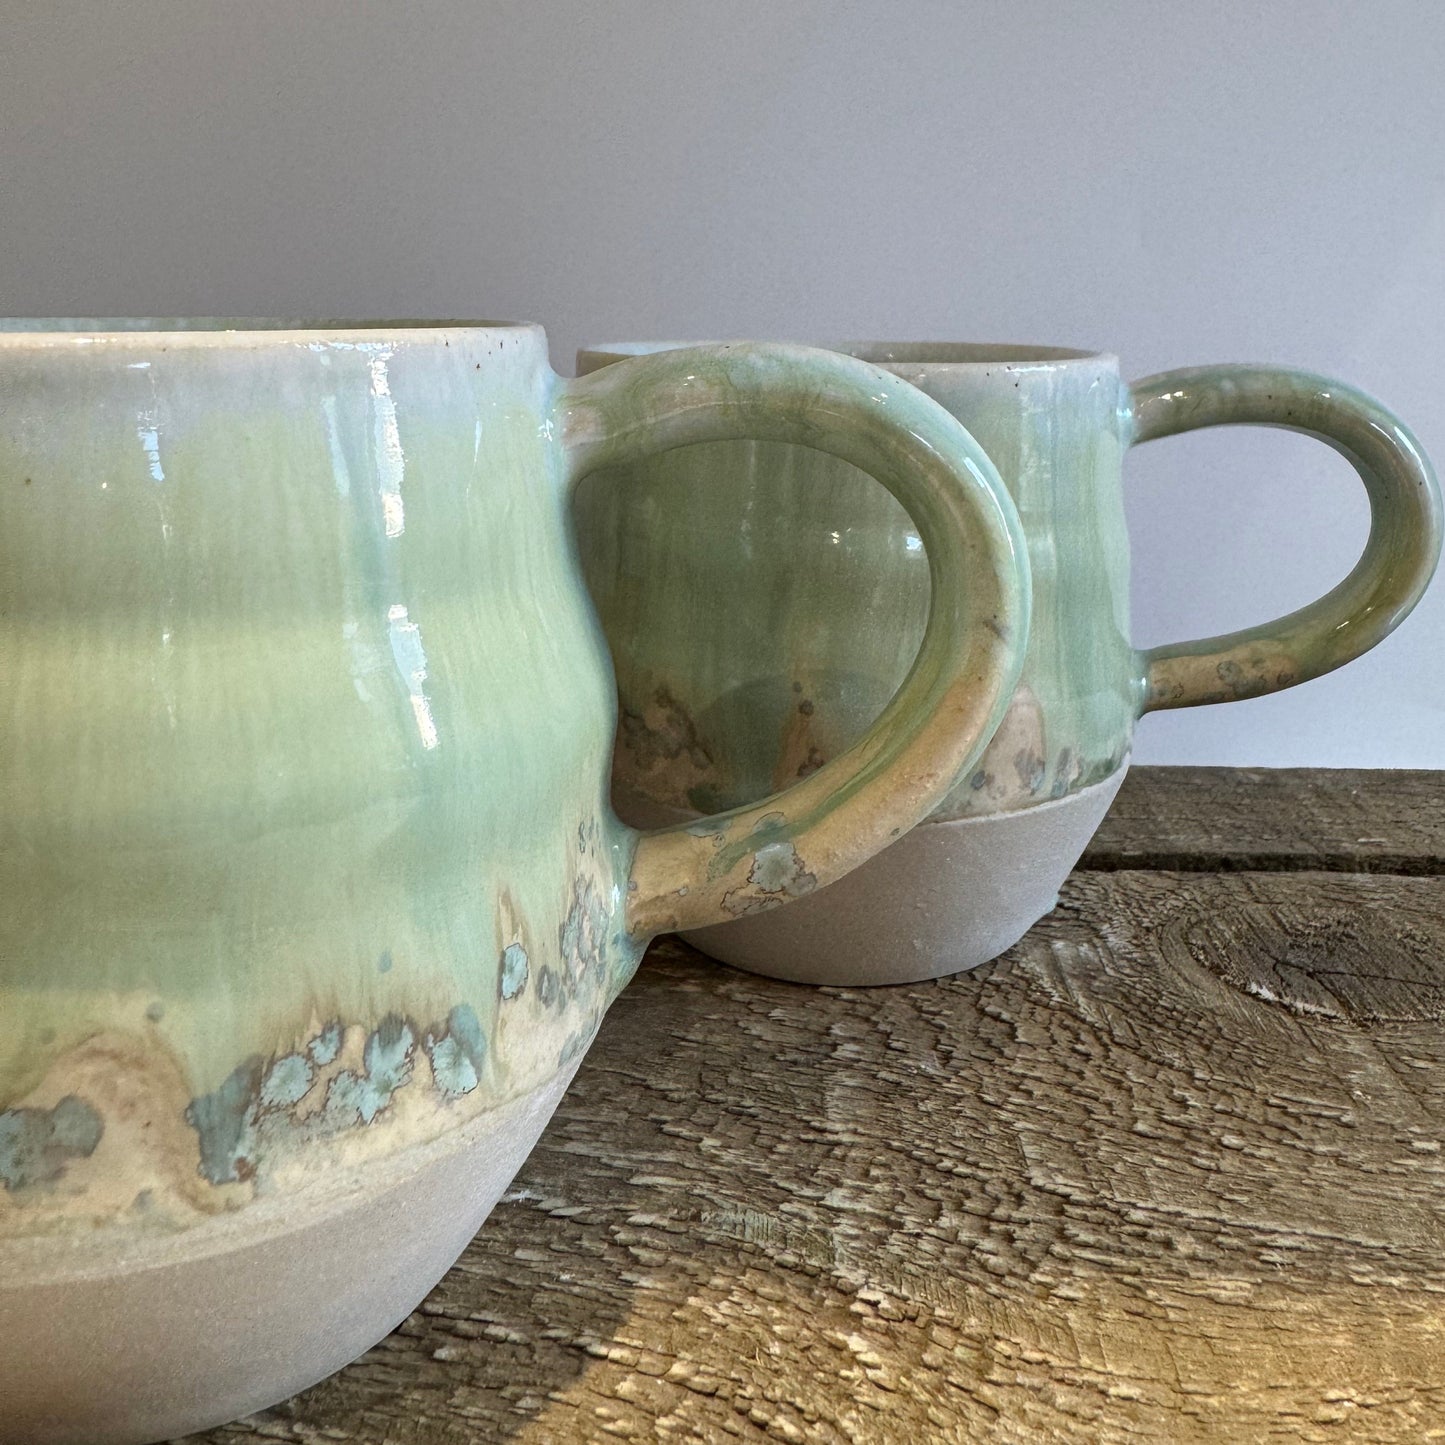 Large Green/Brown Mugs